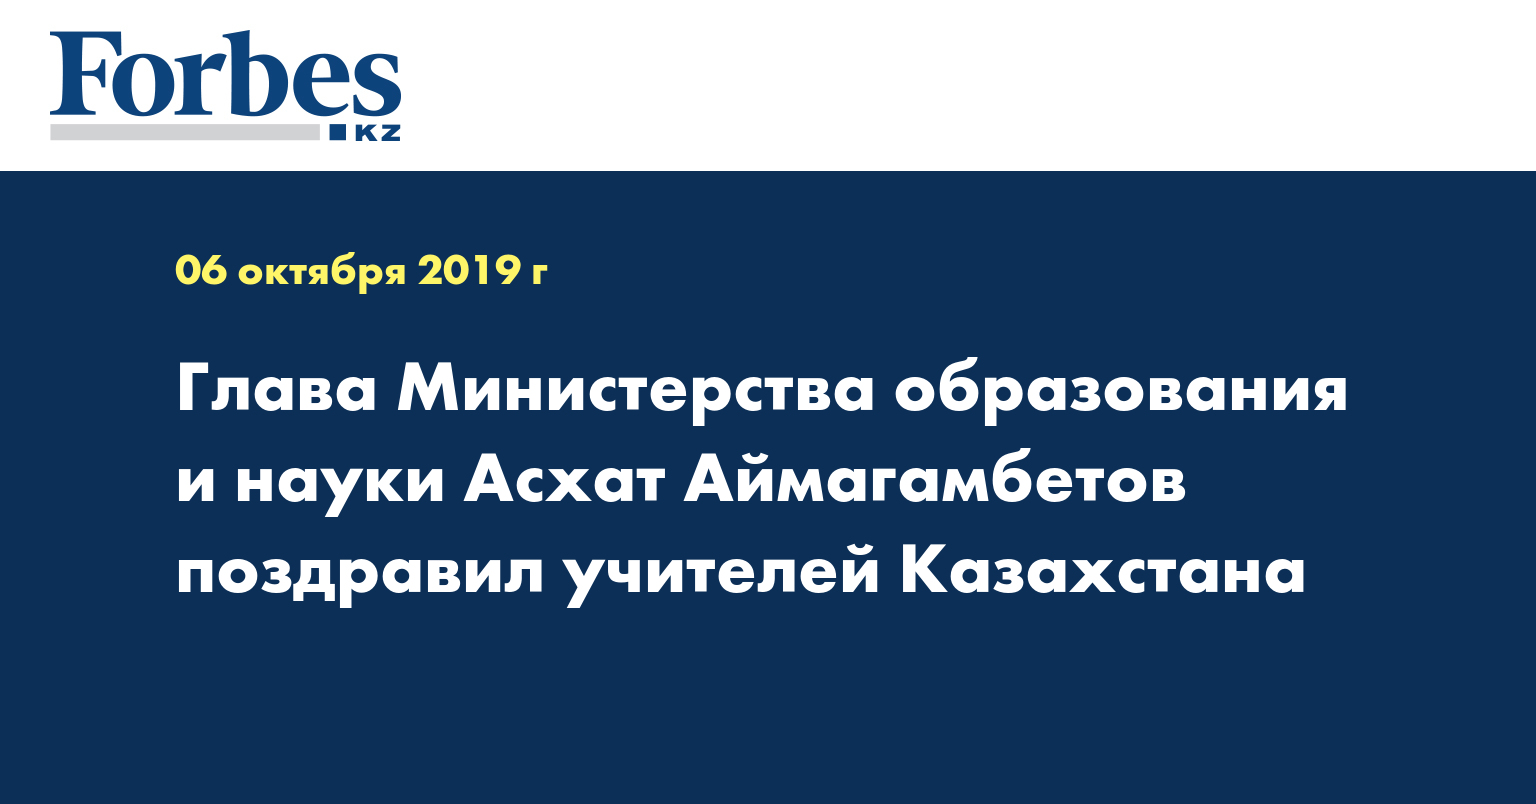 Глава Министерства образования и науки Асхат Аймагамбетов поздравил учителей Казахстана